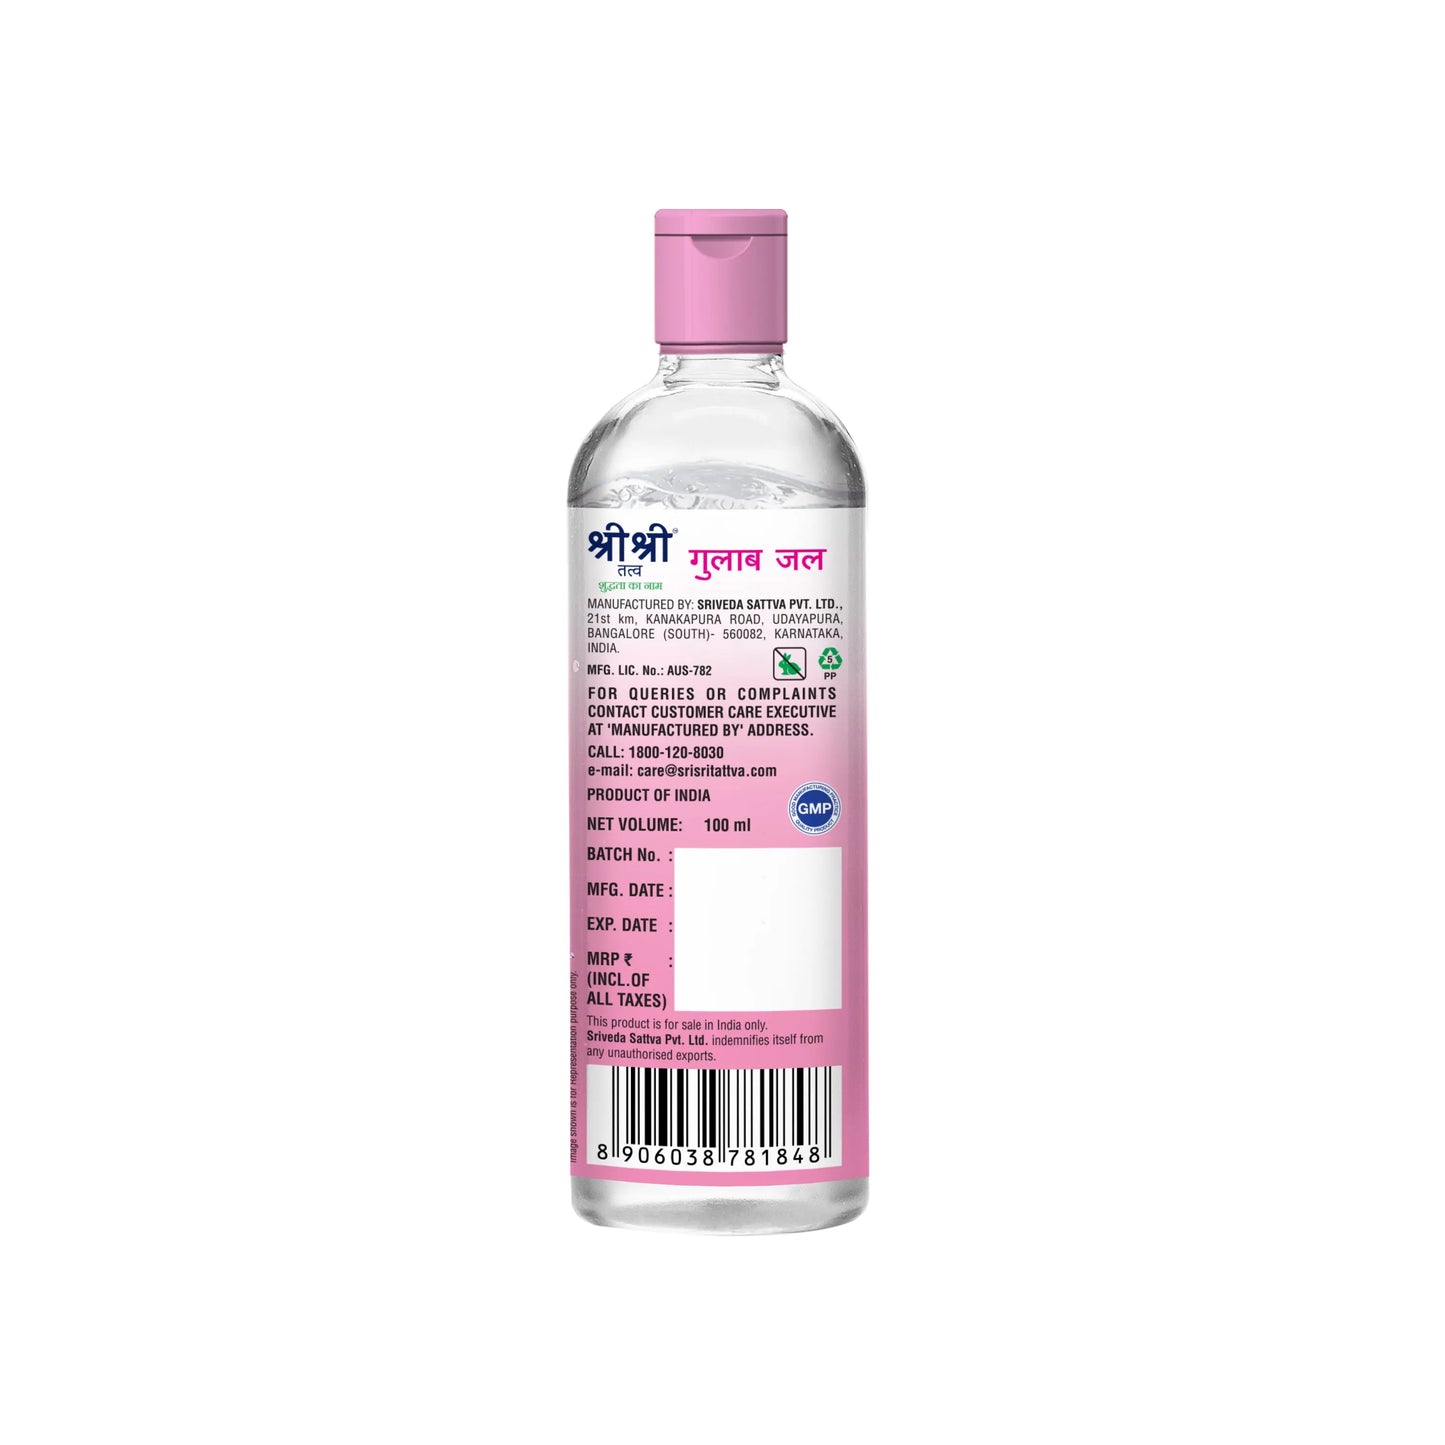 Gulab Jal - Premium Rose Water | Toner Cleanser Moisturizer | Flip Top Bottle | 100 ml